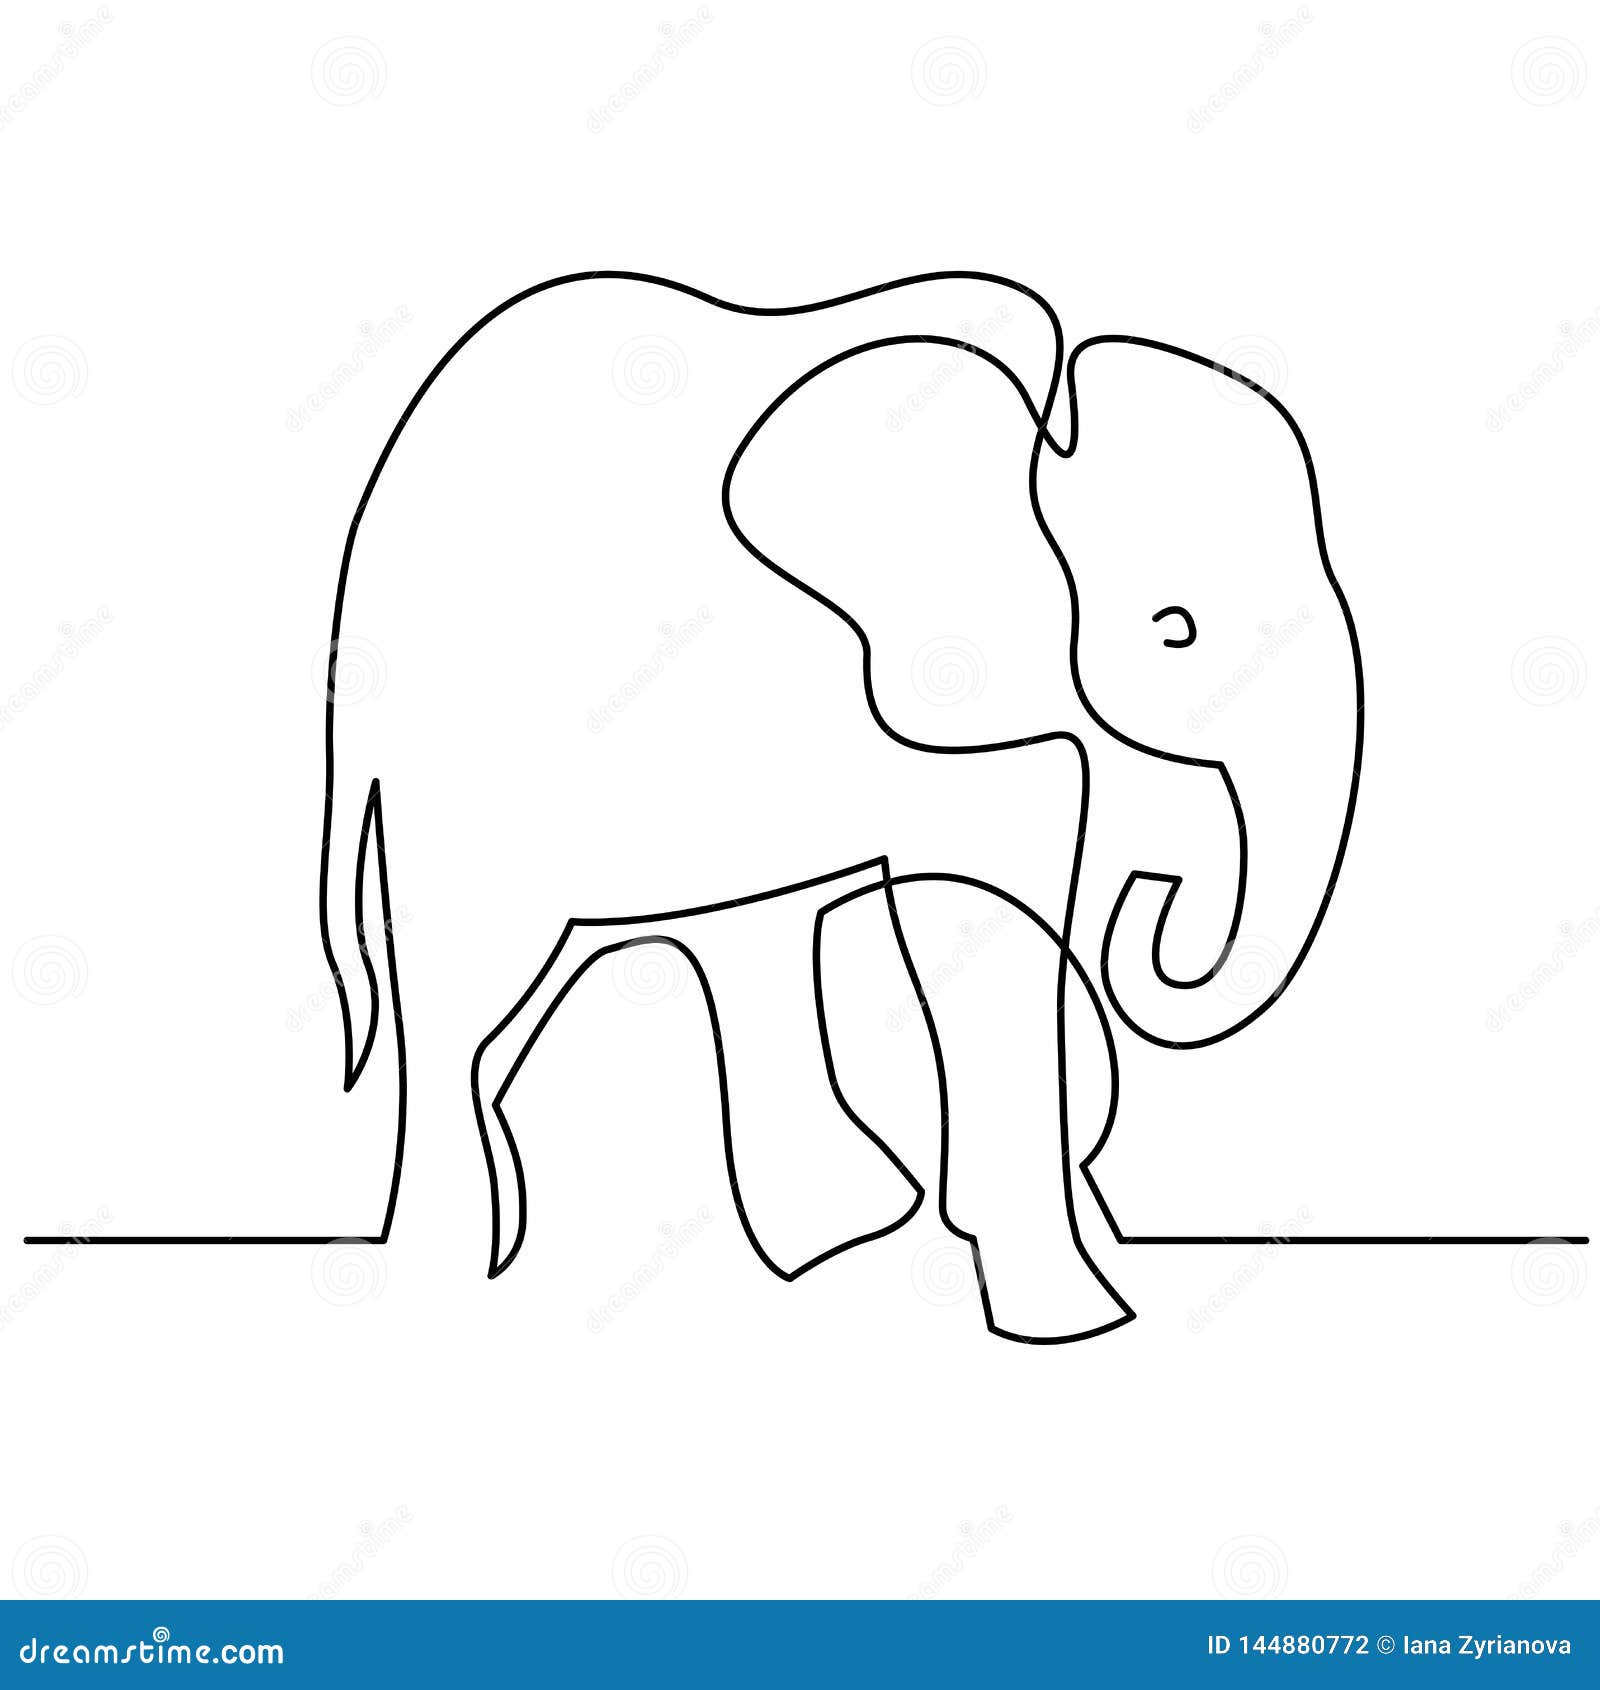 Рисунок слона при помощи одной линии Dreamstime